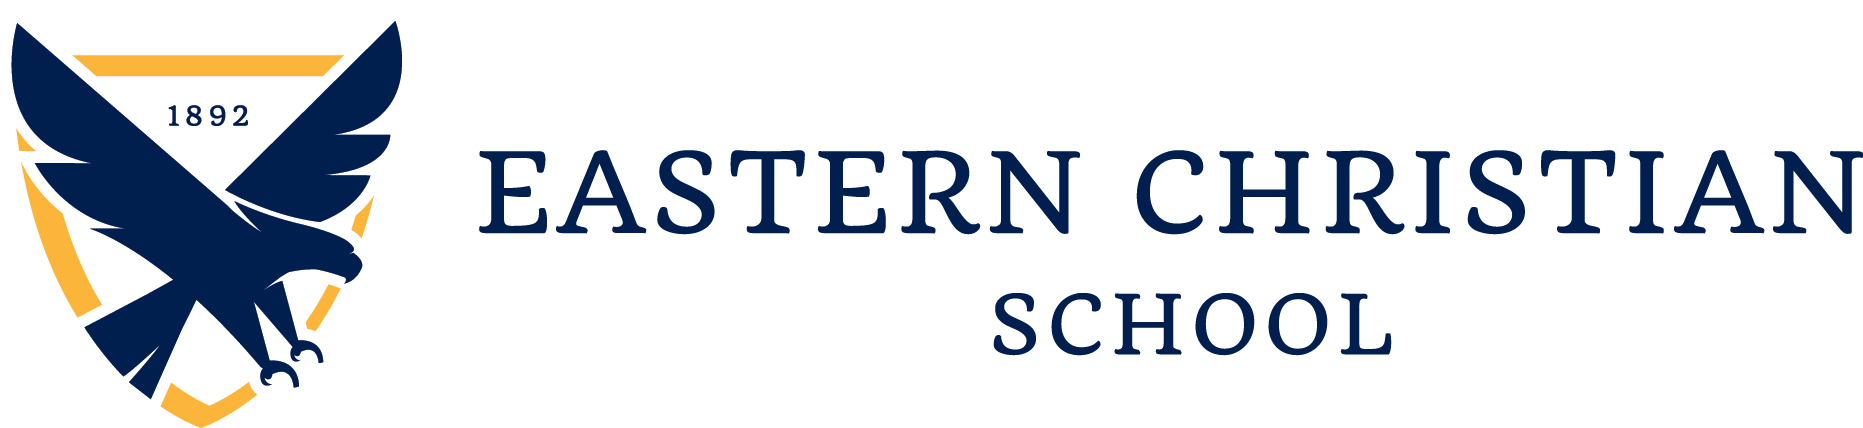 Eastern Christian School logo